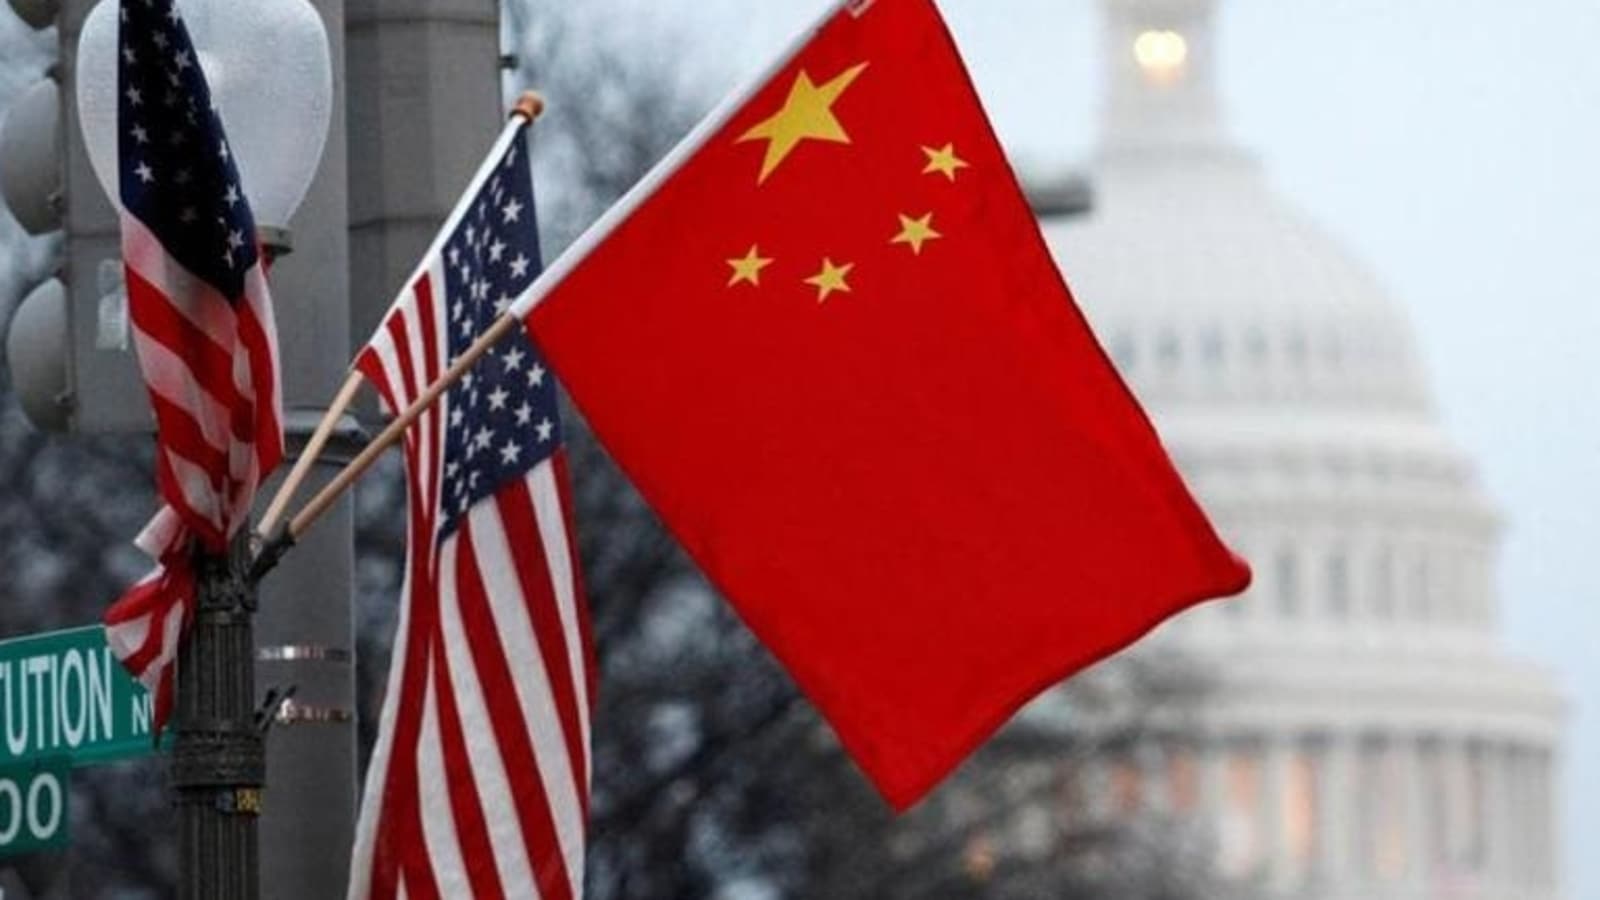 Pesawat China mendekat dalam jarak 20 kaki dari pesawat militer AS, kata US: Report |  berita Dunia